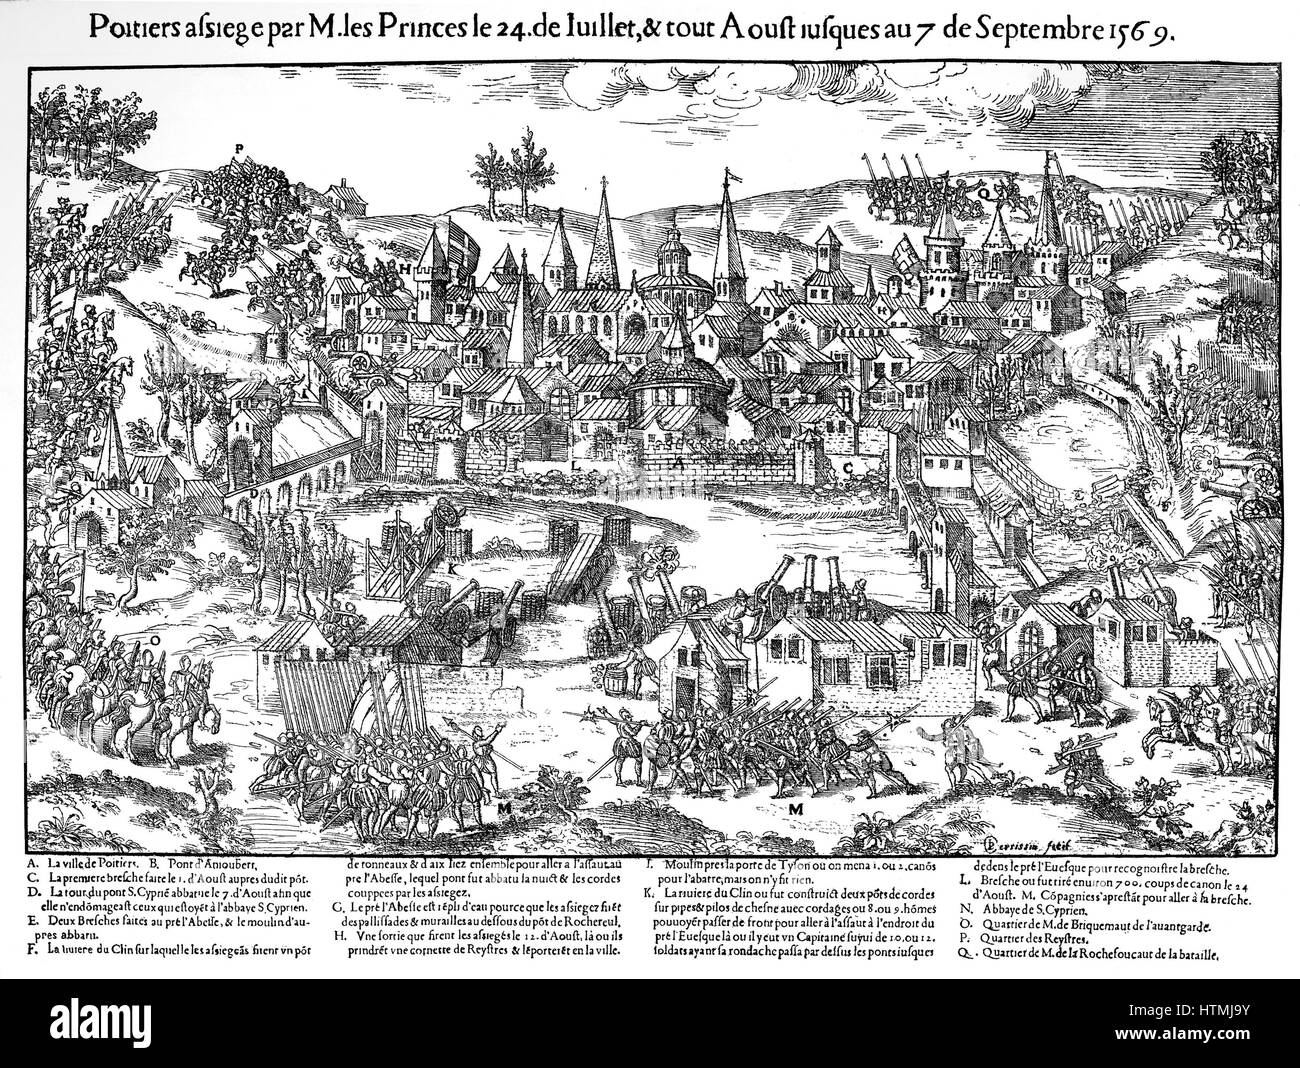 Französischen Sie Religionskriege 1562-1598. Belagerung von Poitiers 24 Juli-7 September 1569. Hugenotten unter Gaspard de Coligny (1519-1572) belagert die Stadt aber die Verteidiger wehrte sie mit Hilfe von schwerer Artillerie und der Kavallerie und eine kleine Truppe von Überschwemmungen mich Stockfoto